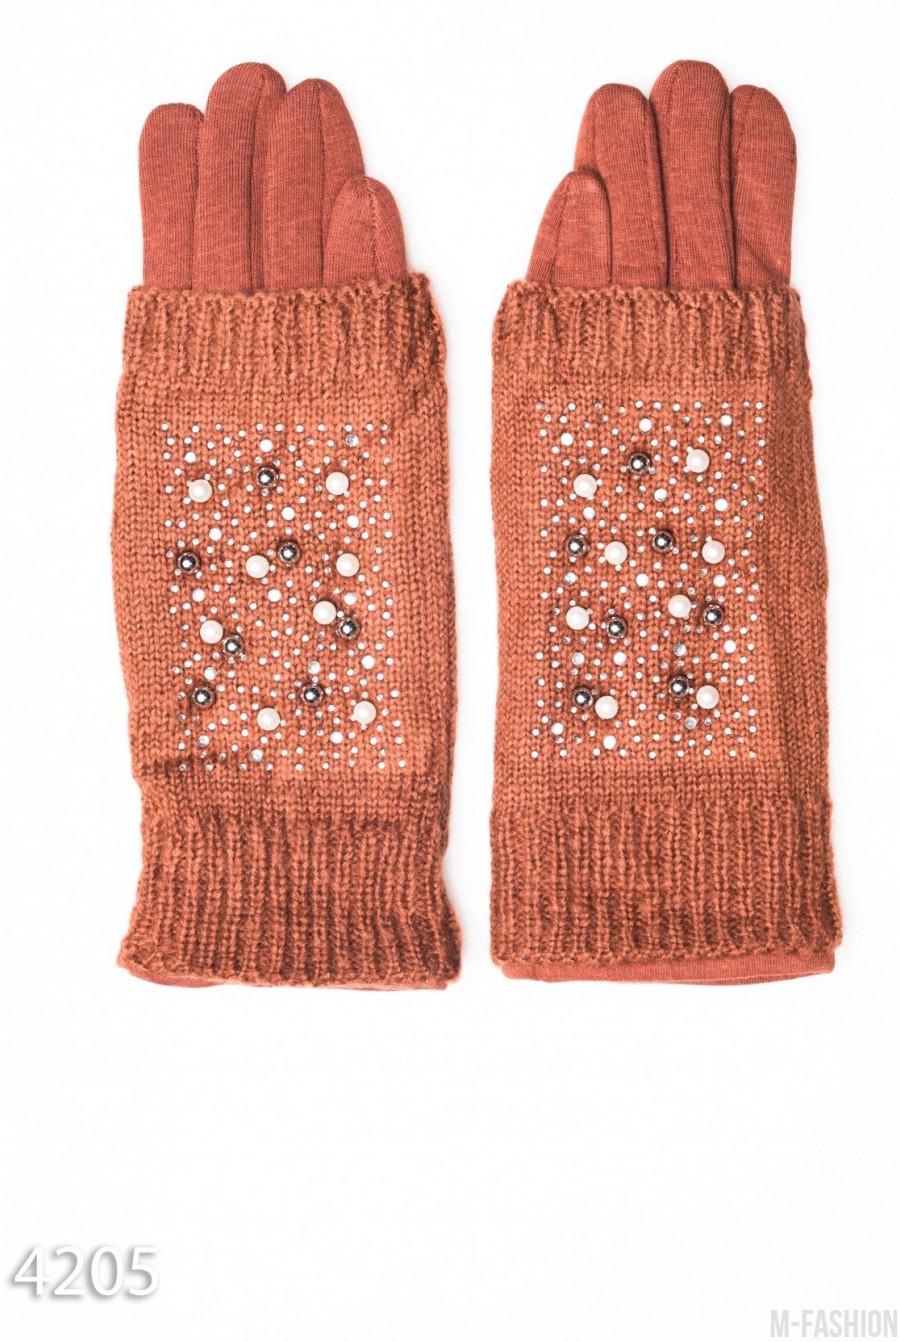 Коричневые перчатки-митенки с бусинами и пальчиками мелкой вязки - Фото 1